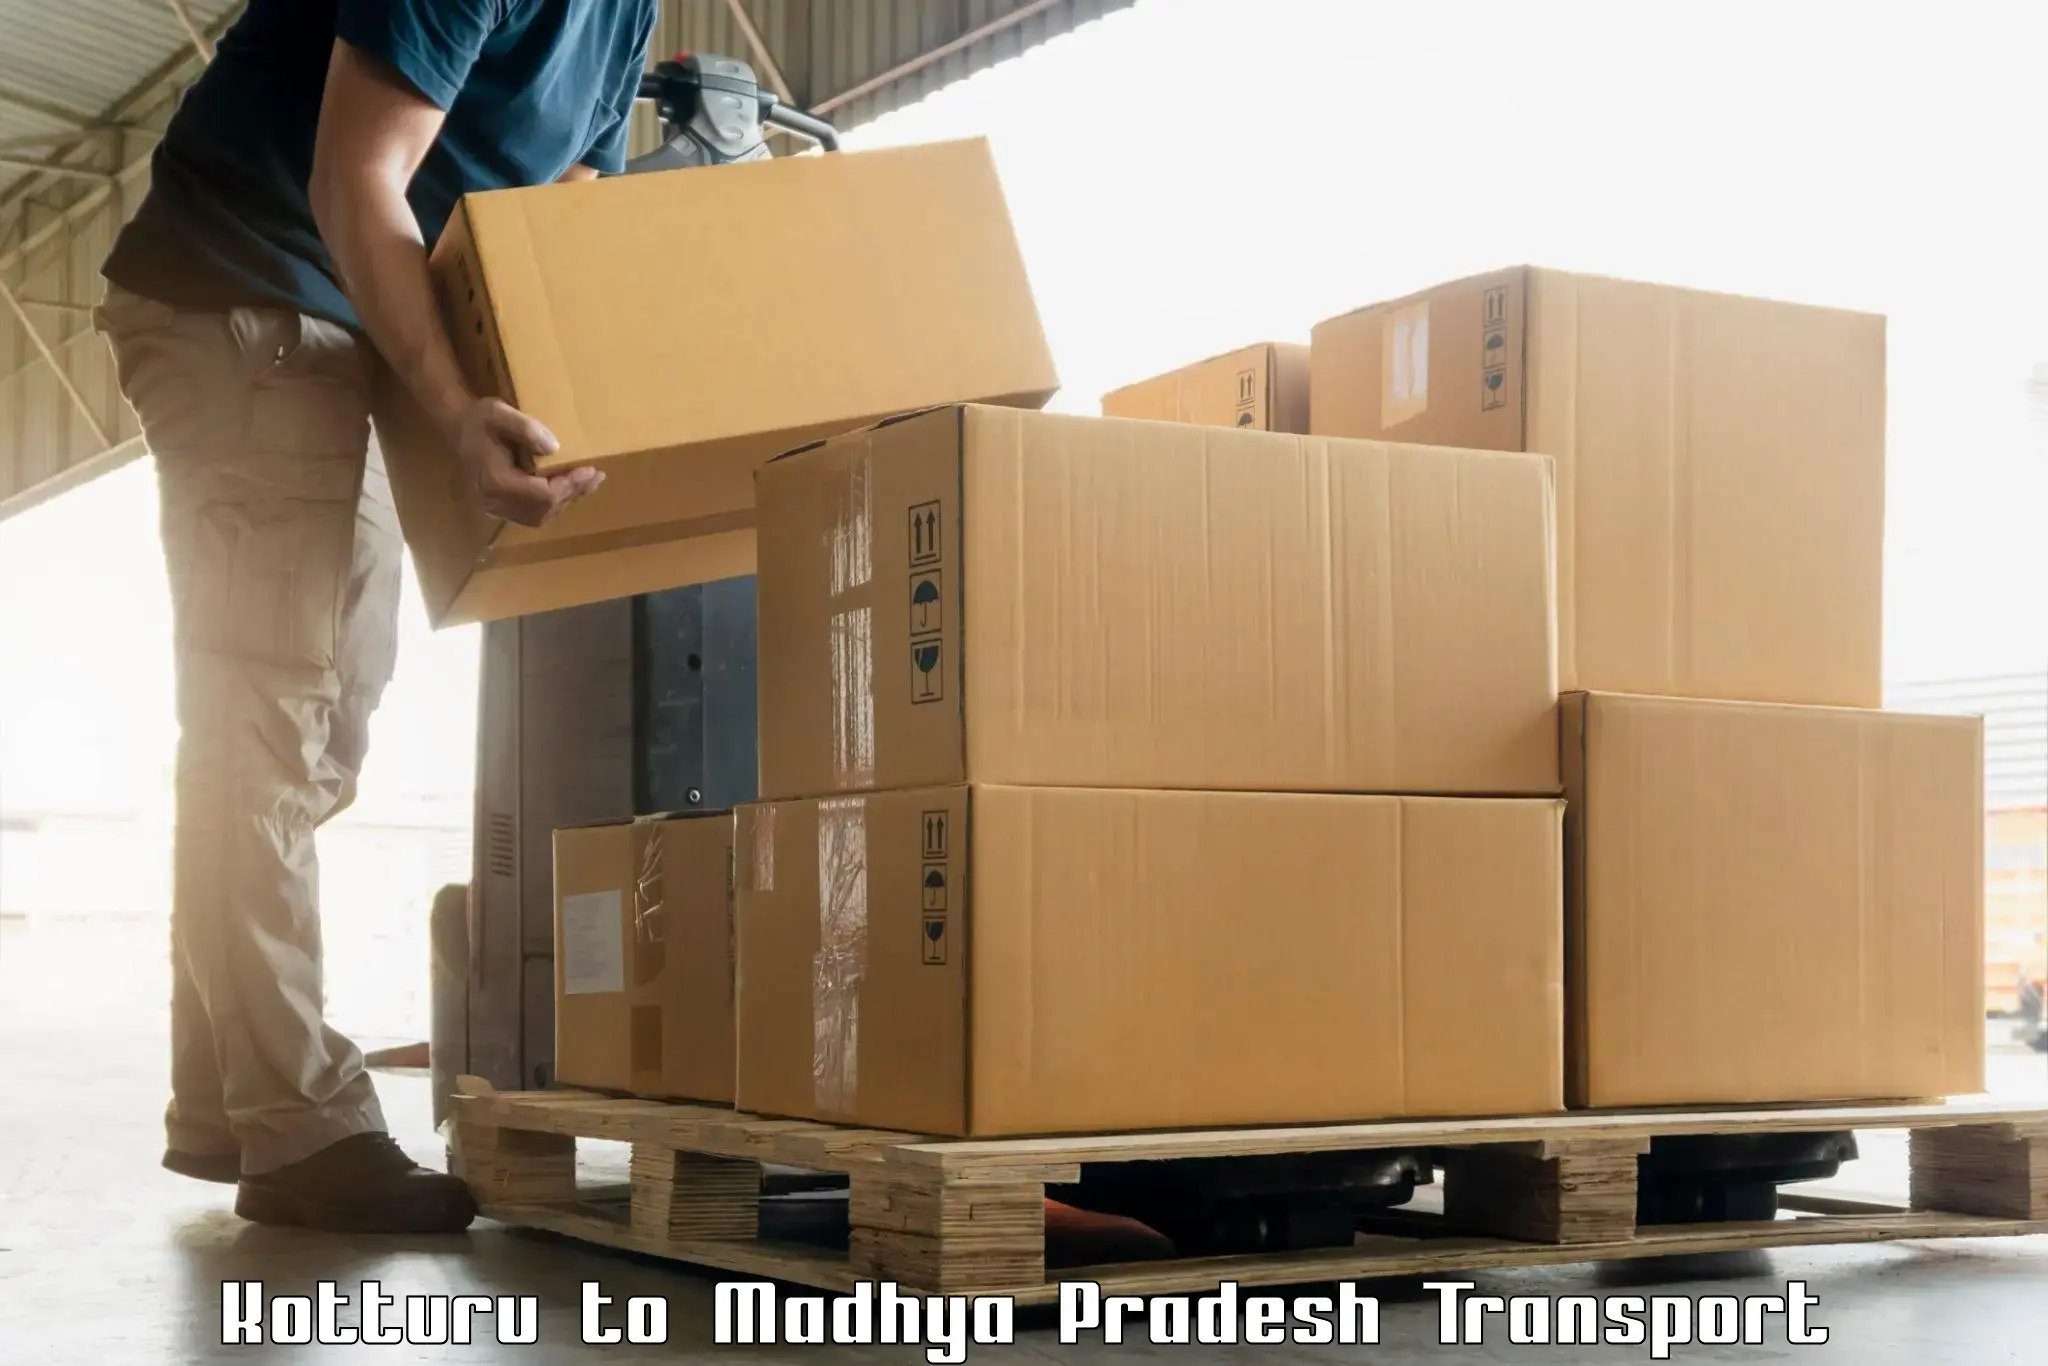 Luggage transport services Kotturu to Binaganj